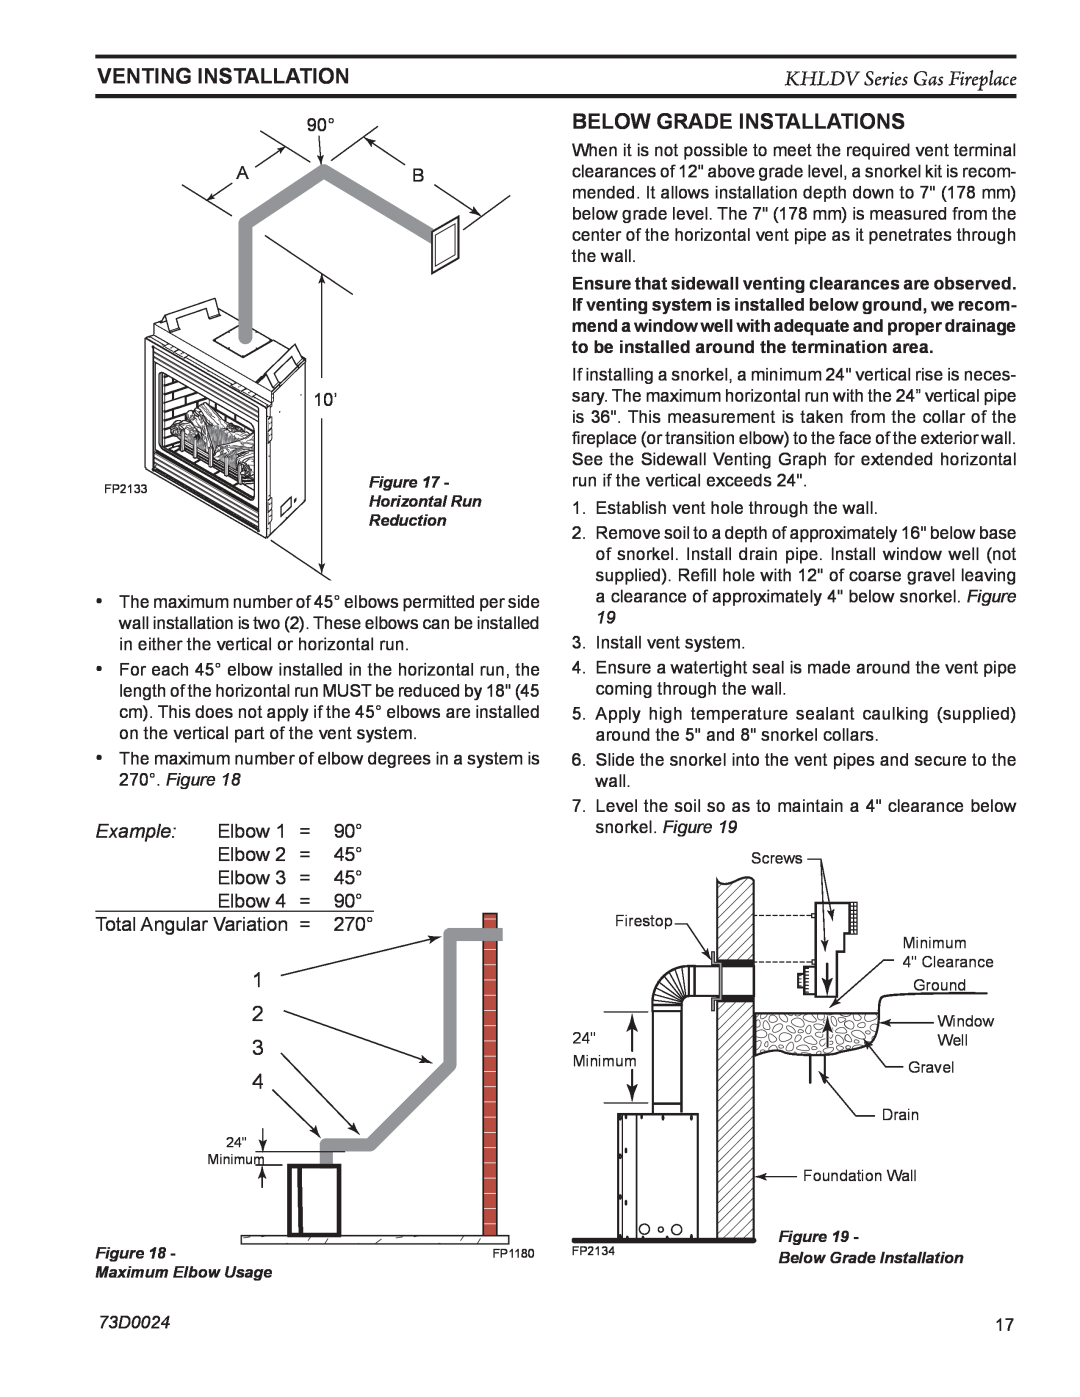 Monessen Hearth KHLDV400, KHLDV500 operating instructions ventING installation, Below Grade Installations, Example 